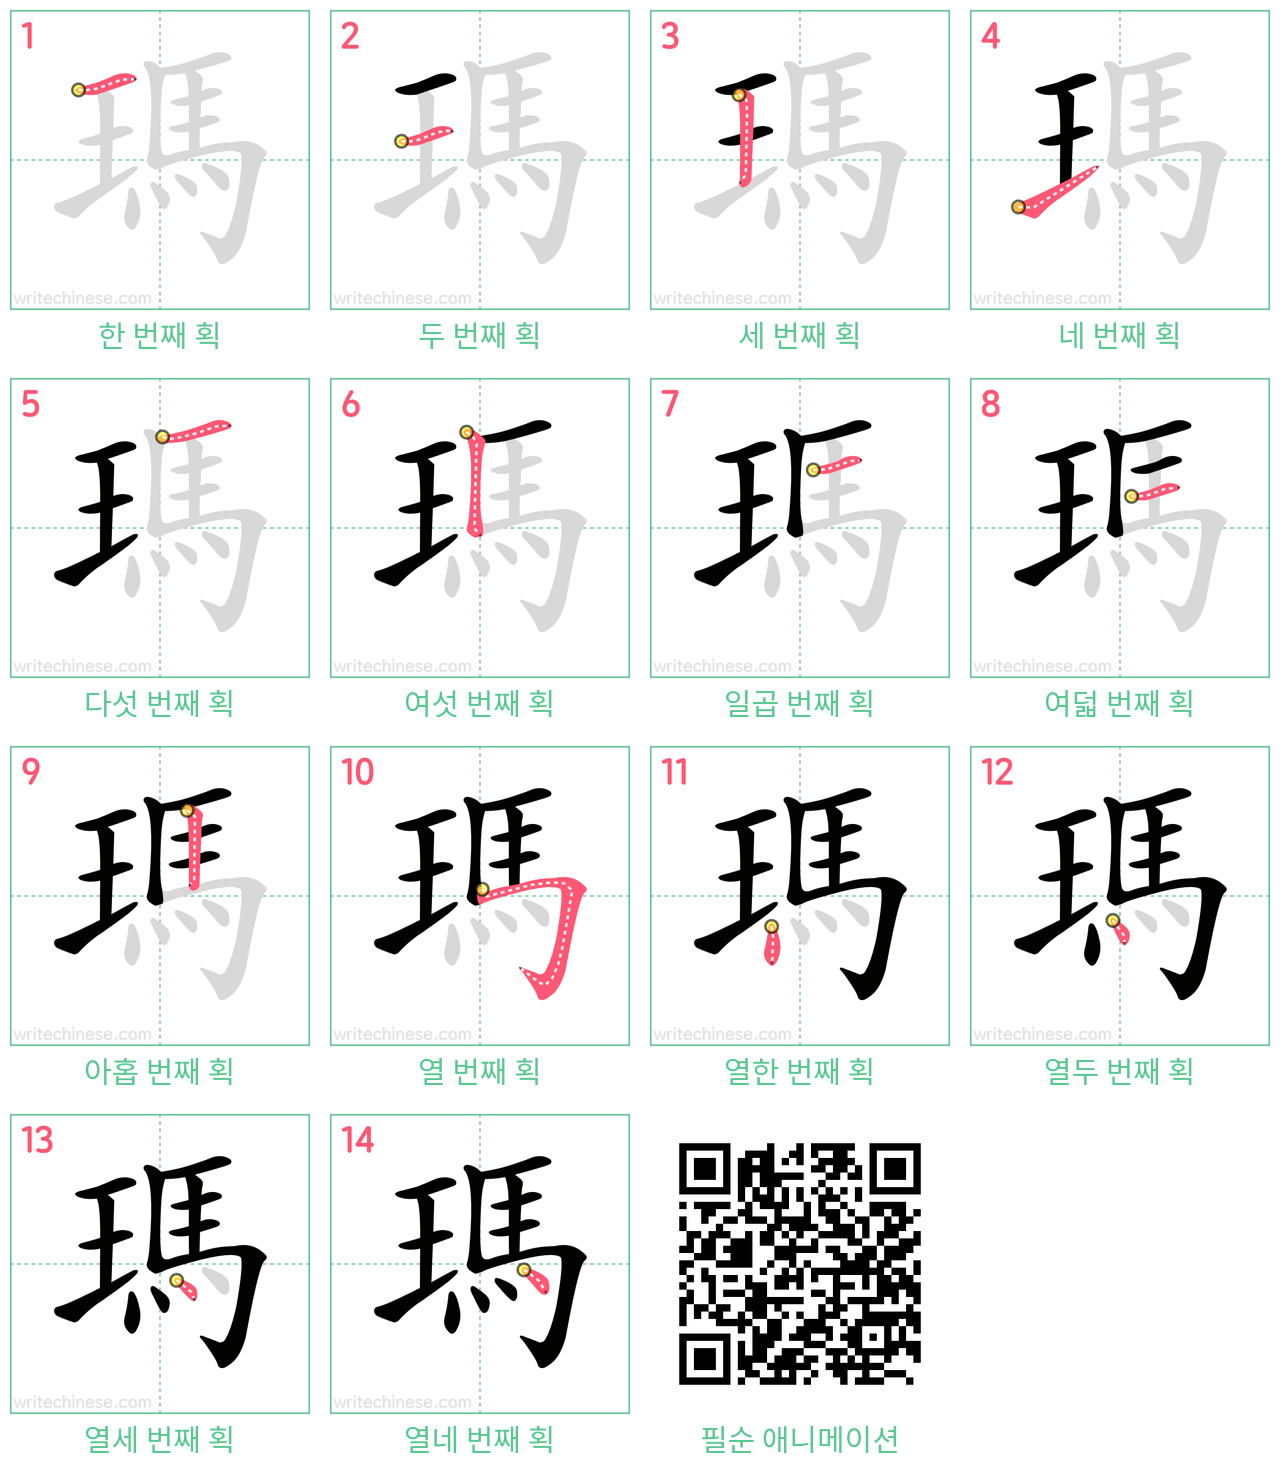 瑪 step-by-step stroke order diagrams